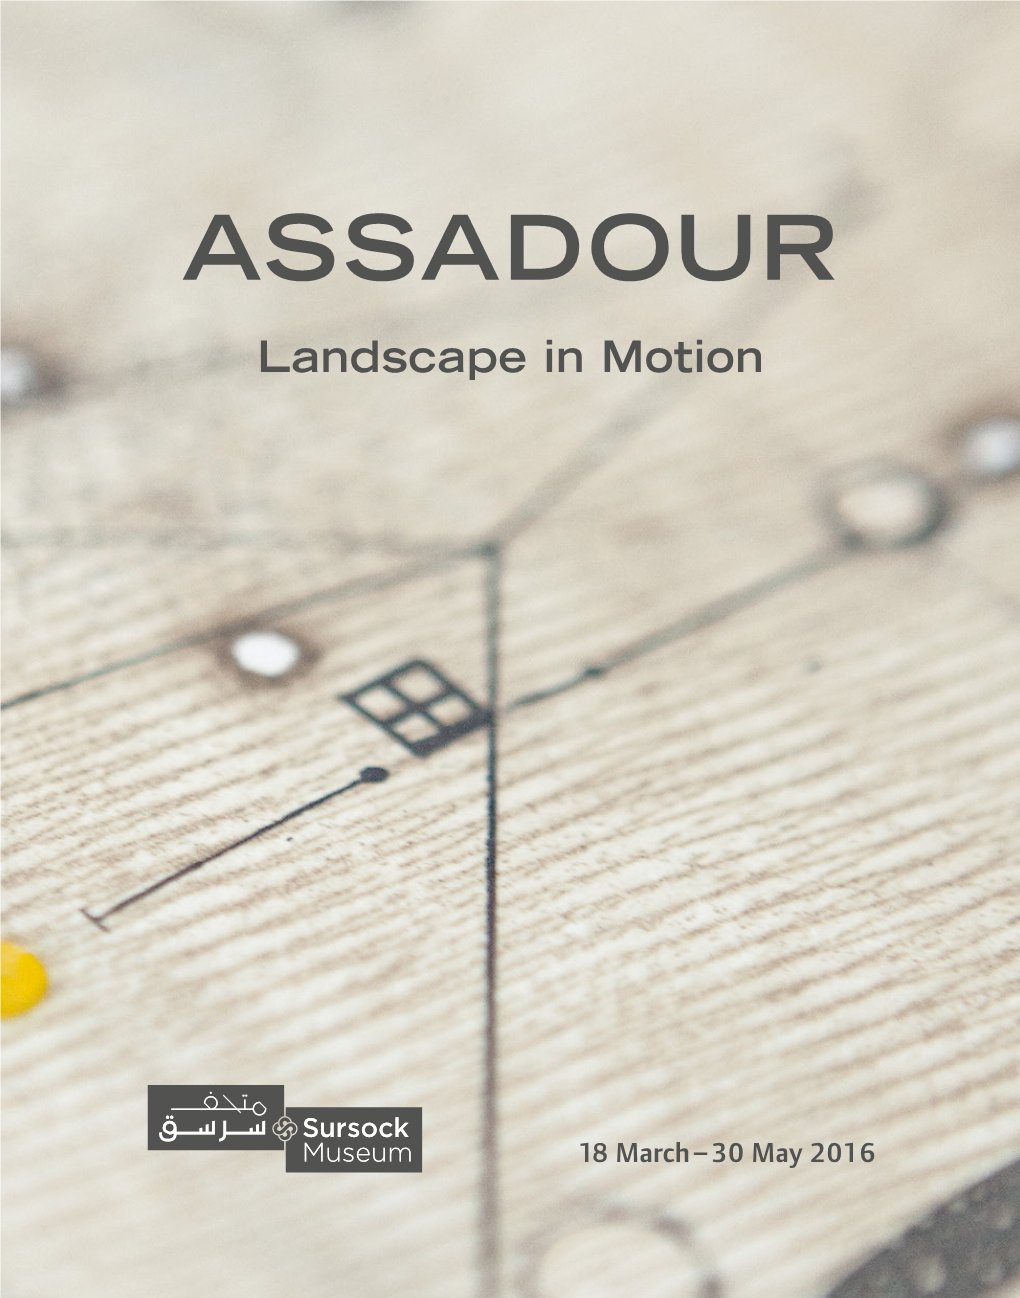 ASSADOUR Landscape in Motion